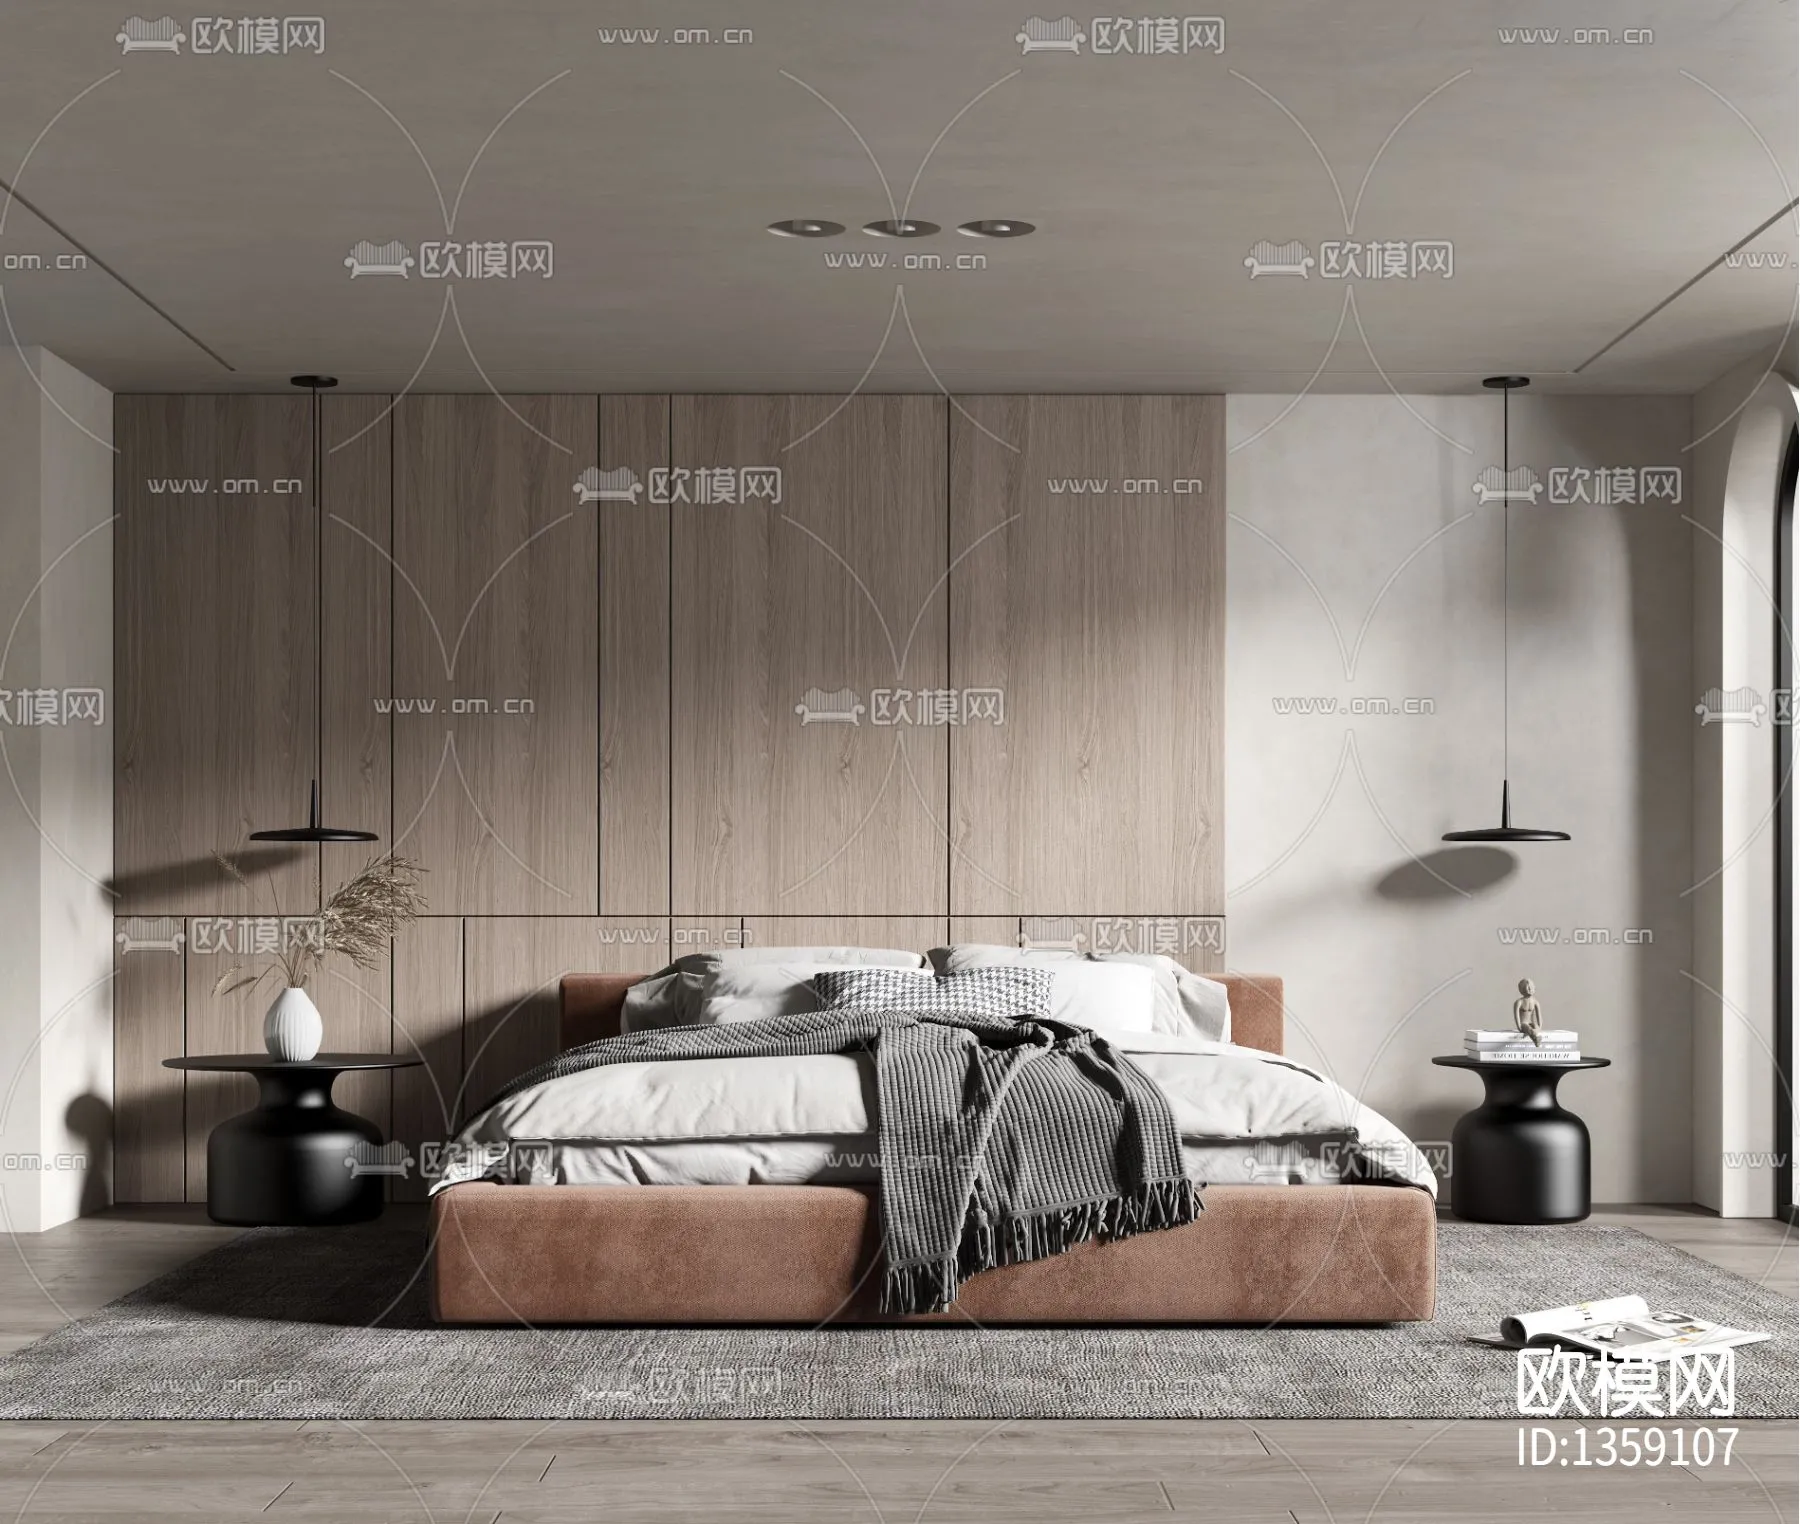 Bedroom 3D Scenes – 0294